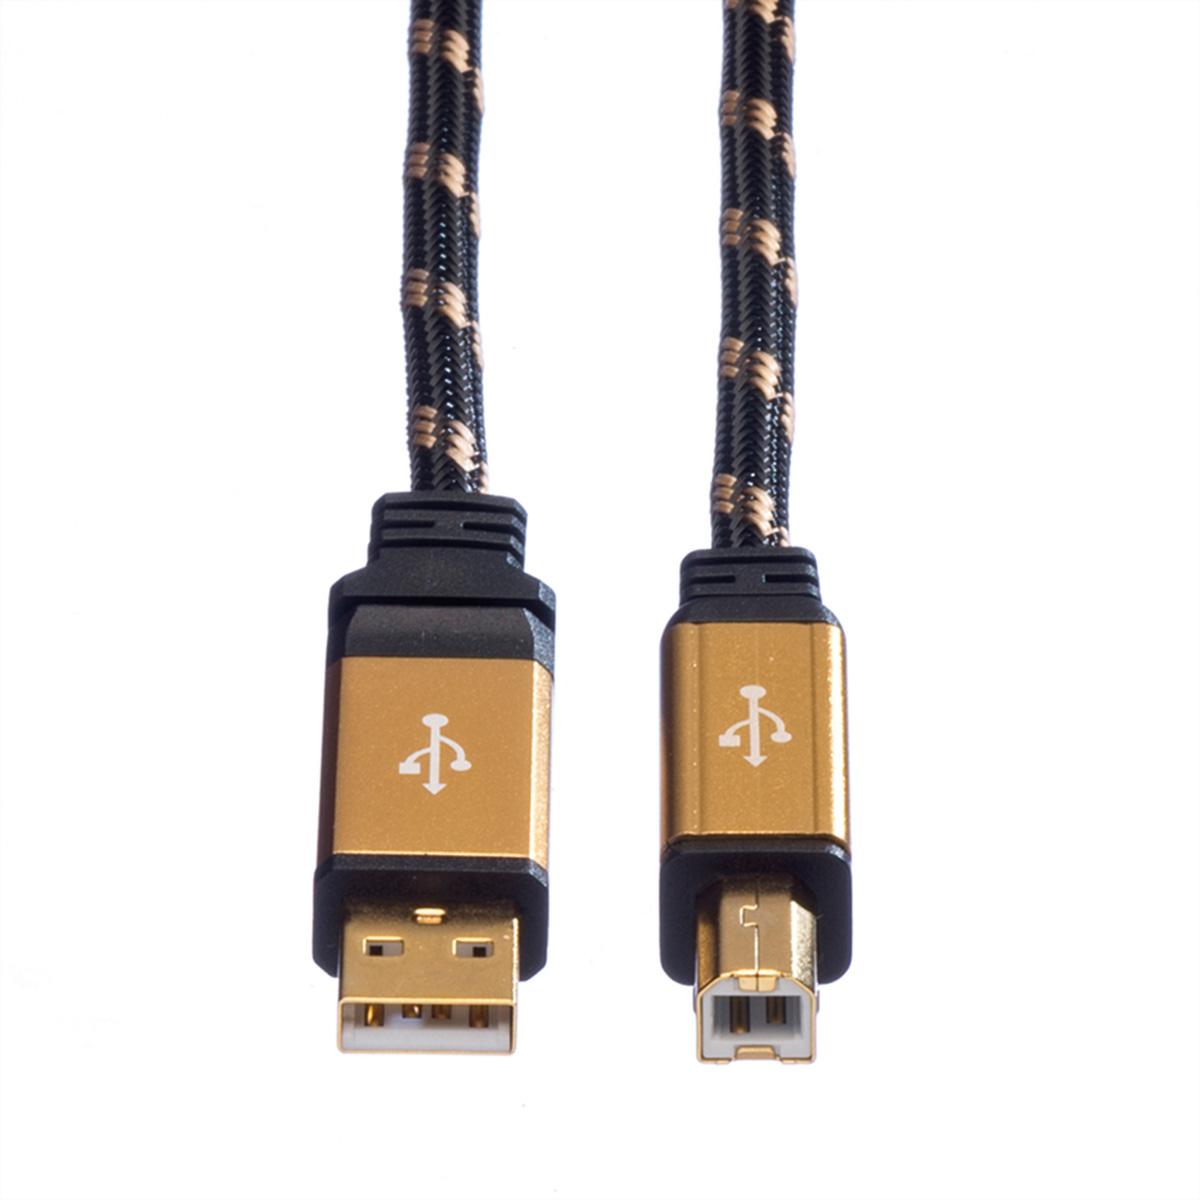 ROLINE GOLD USB 2.0 Kabel USB 2.0 Kabel